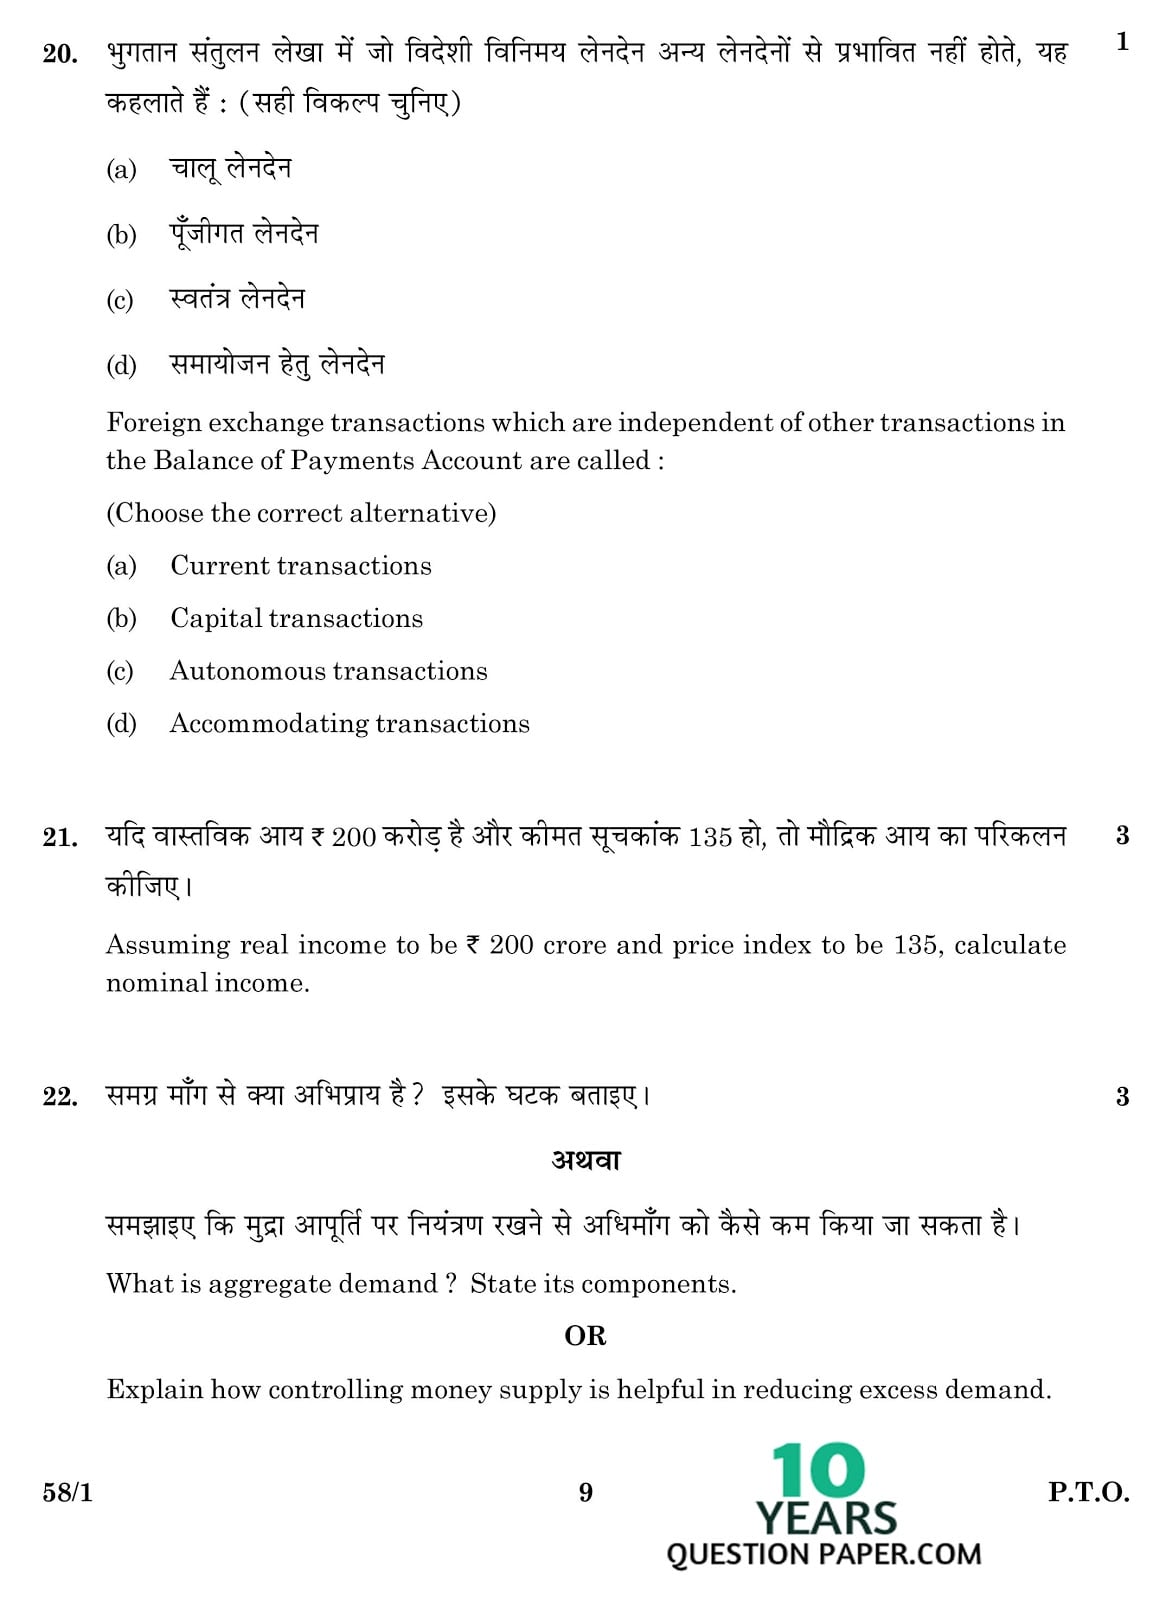 CBSE Class 12 Economics 2016 Question Paper